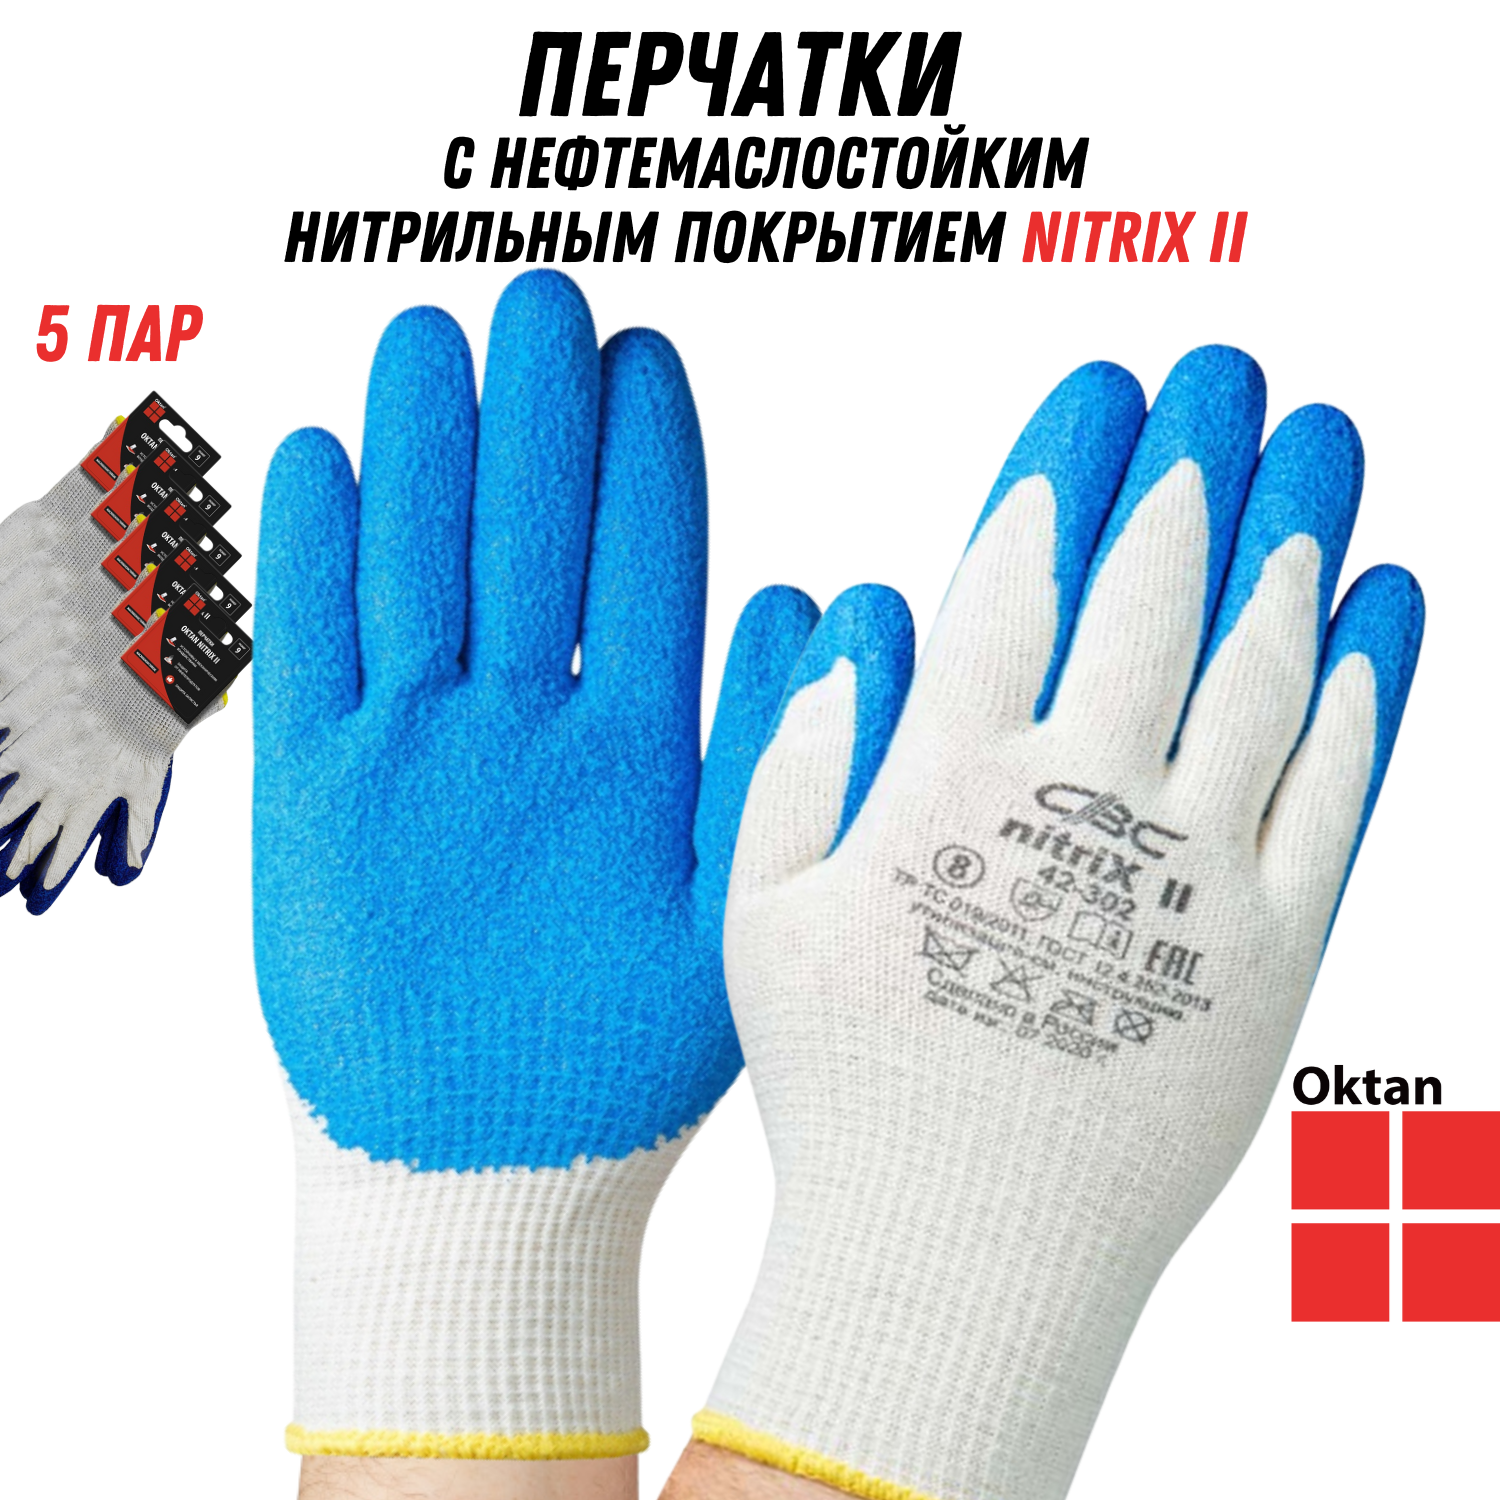 Перчатки рабочие Oktan NITRIX II А5-01-21-05-ММ белые с синим размер 9, 5 пар рабочие перчатки общего применения truper